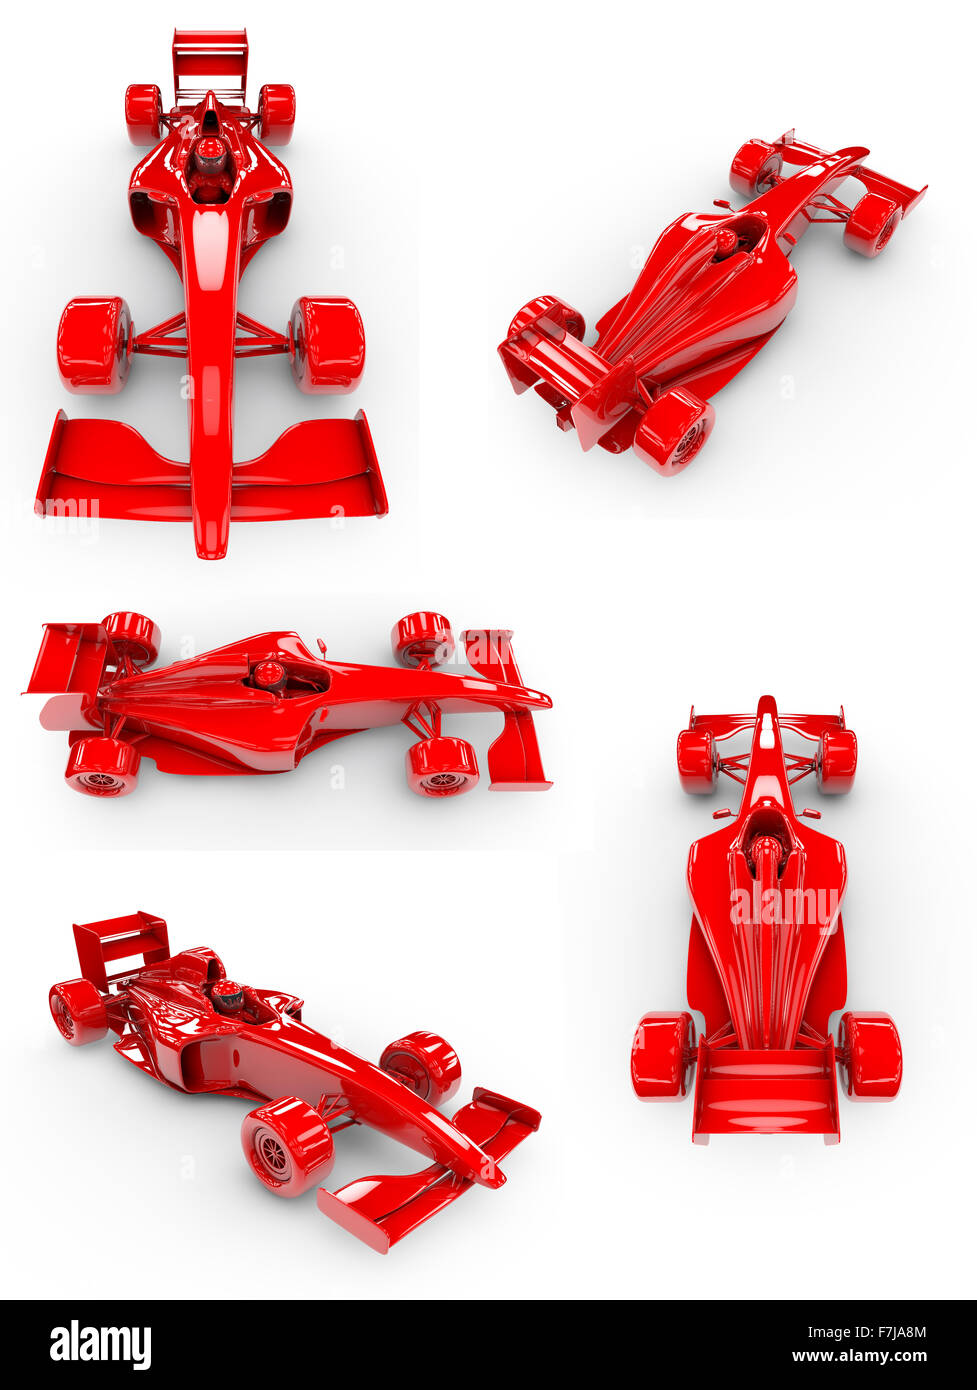 Formel-1-Konzept SET 3 / 5 Ansichten der konzeptionellen Formel 1 Auto, leicht zu kolorieren Stockfoto